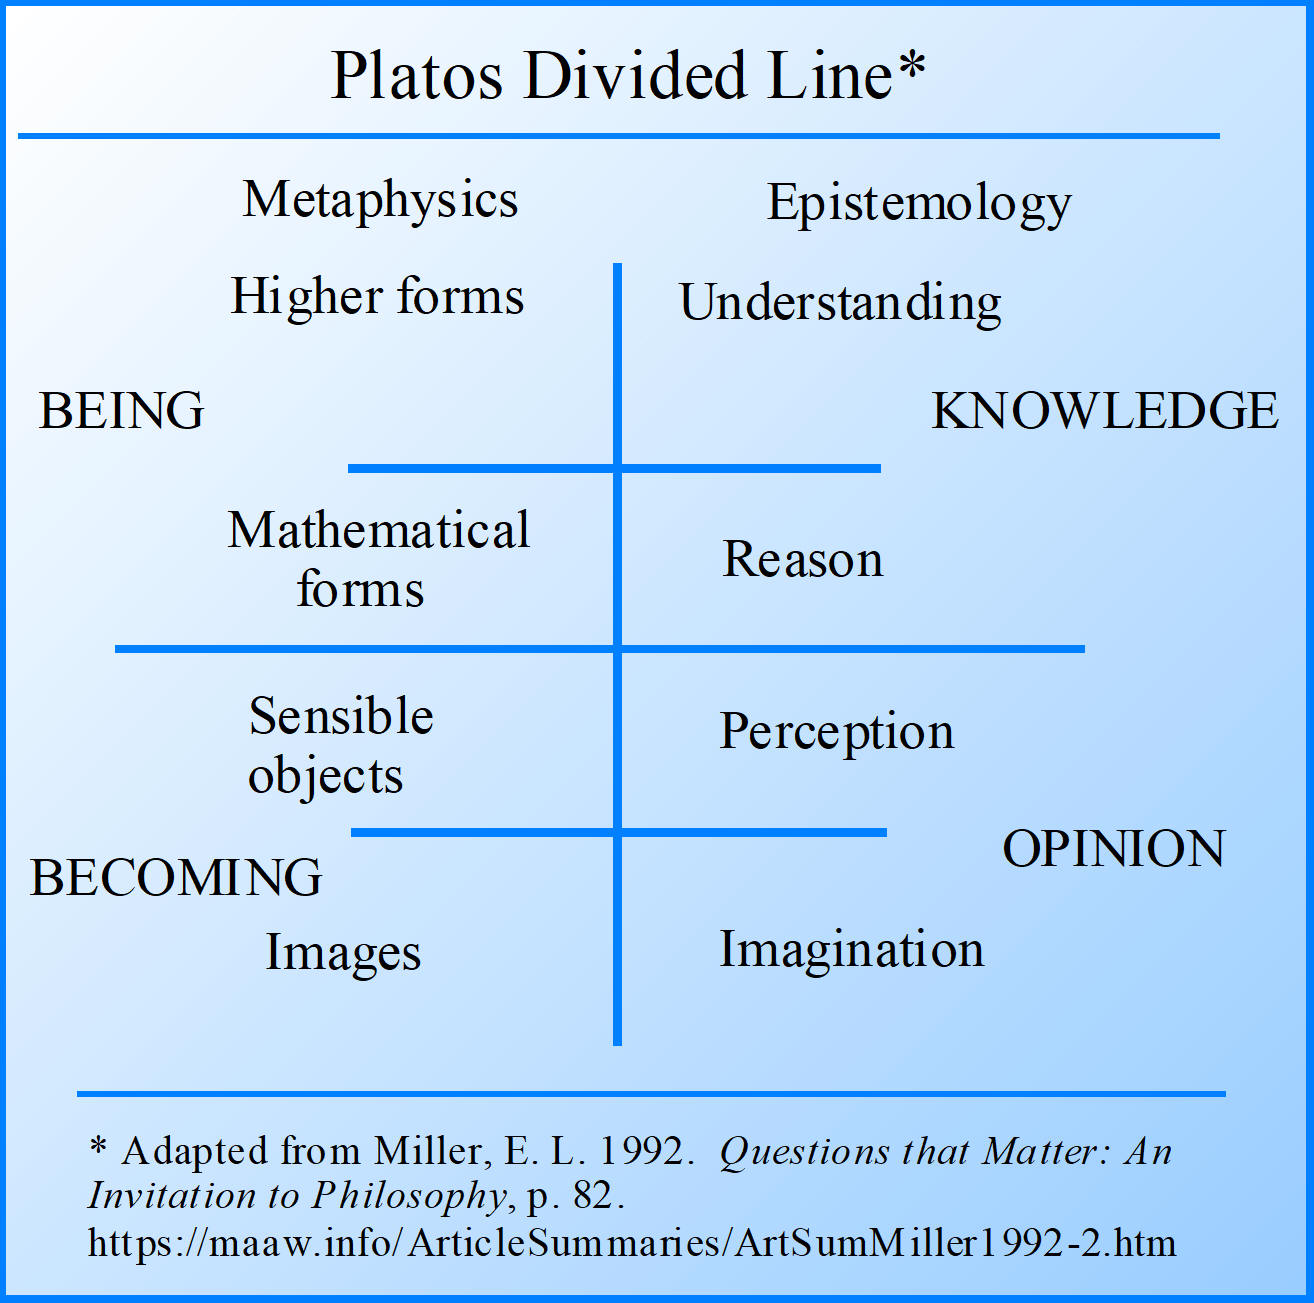 Platos Divided Line